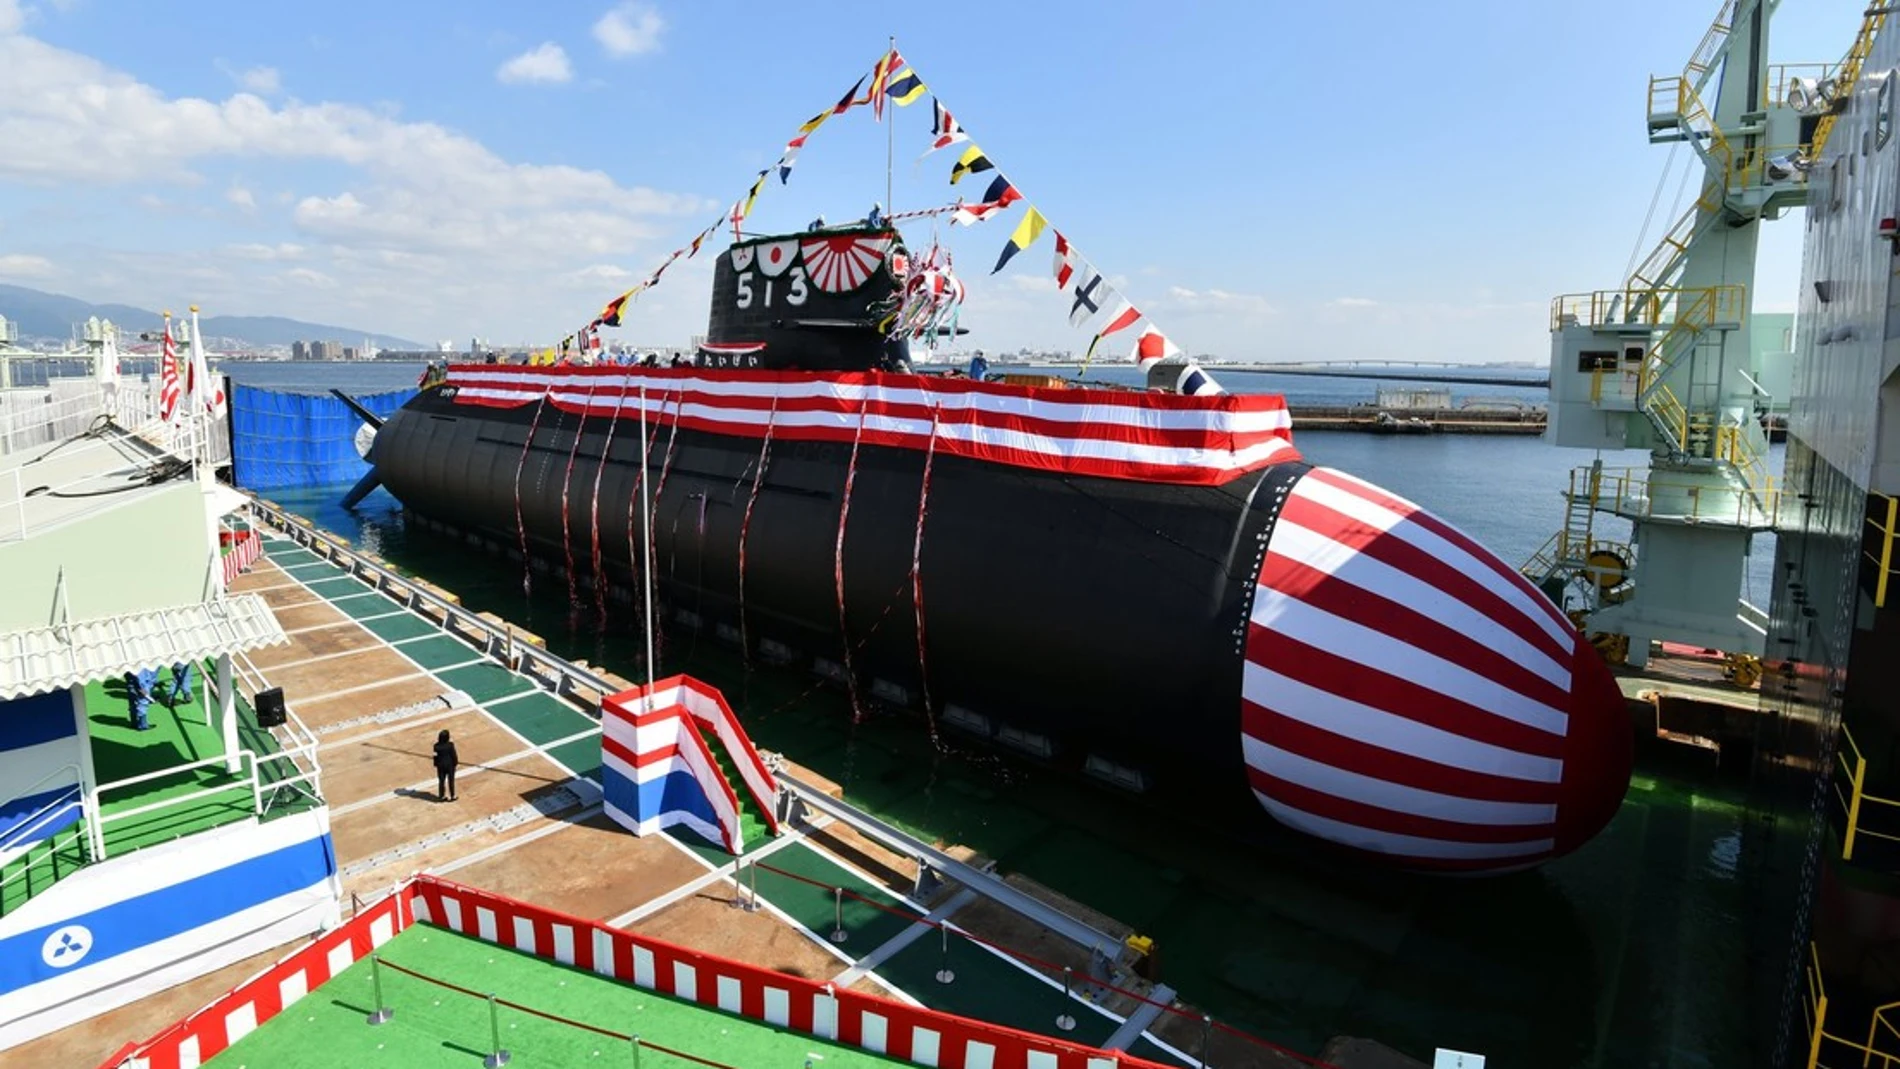 El nuevo submarino Taigei atracado en un muelle del puerto de Kobe (Japón)